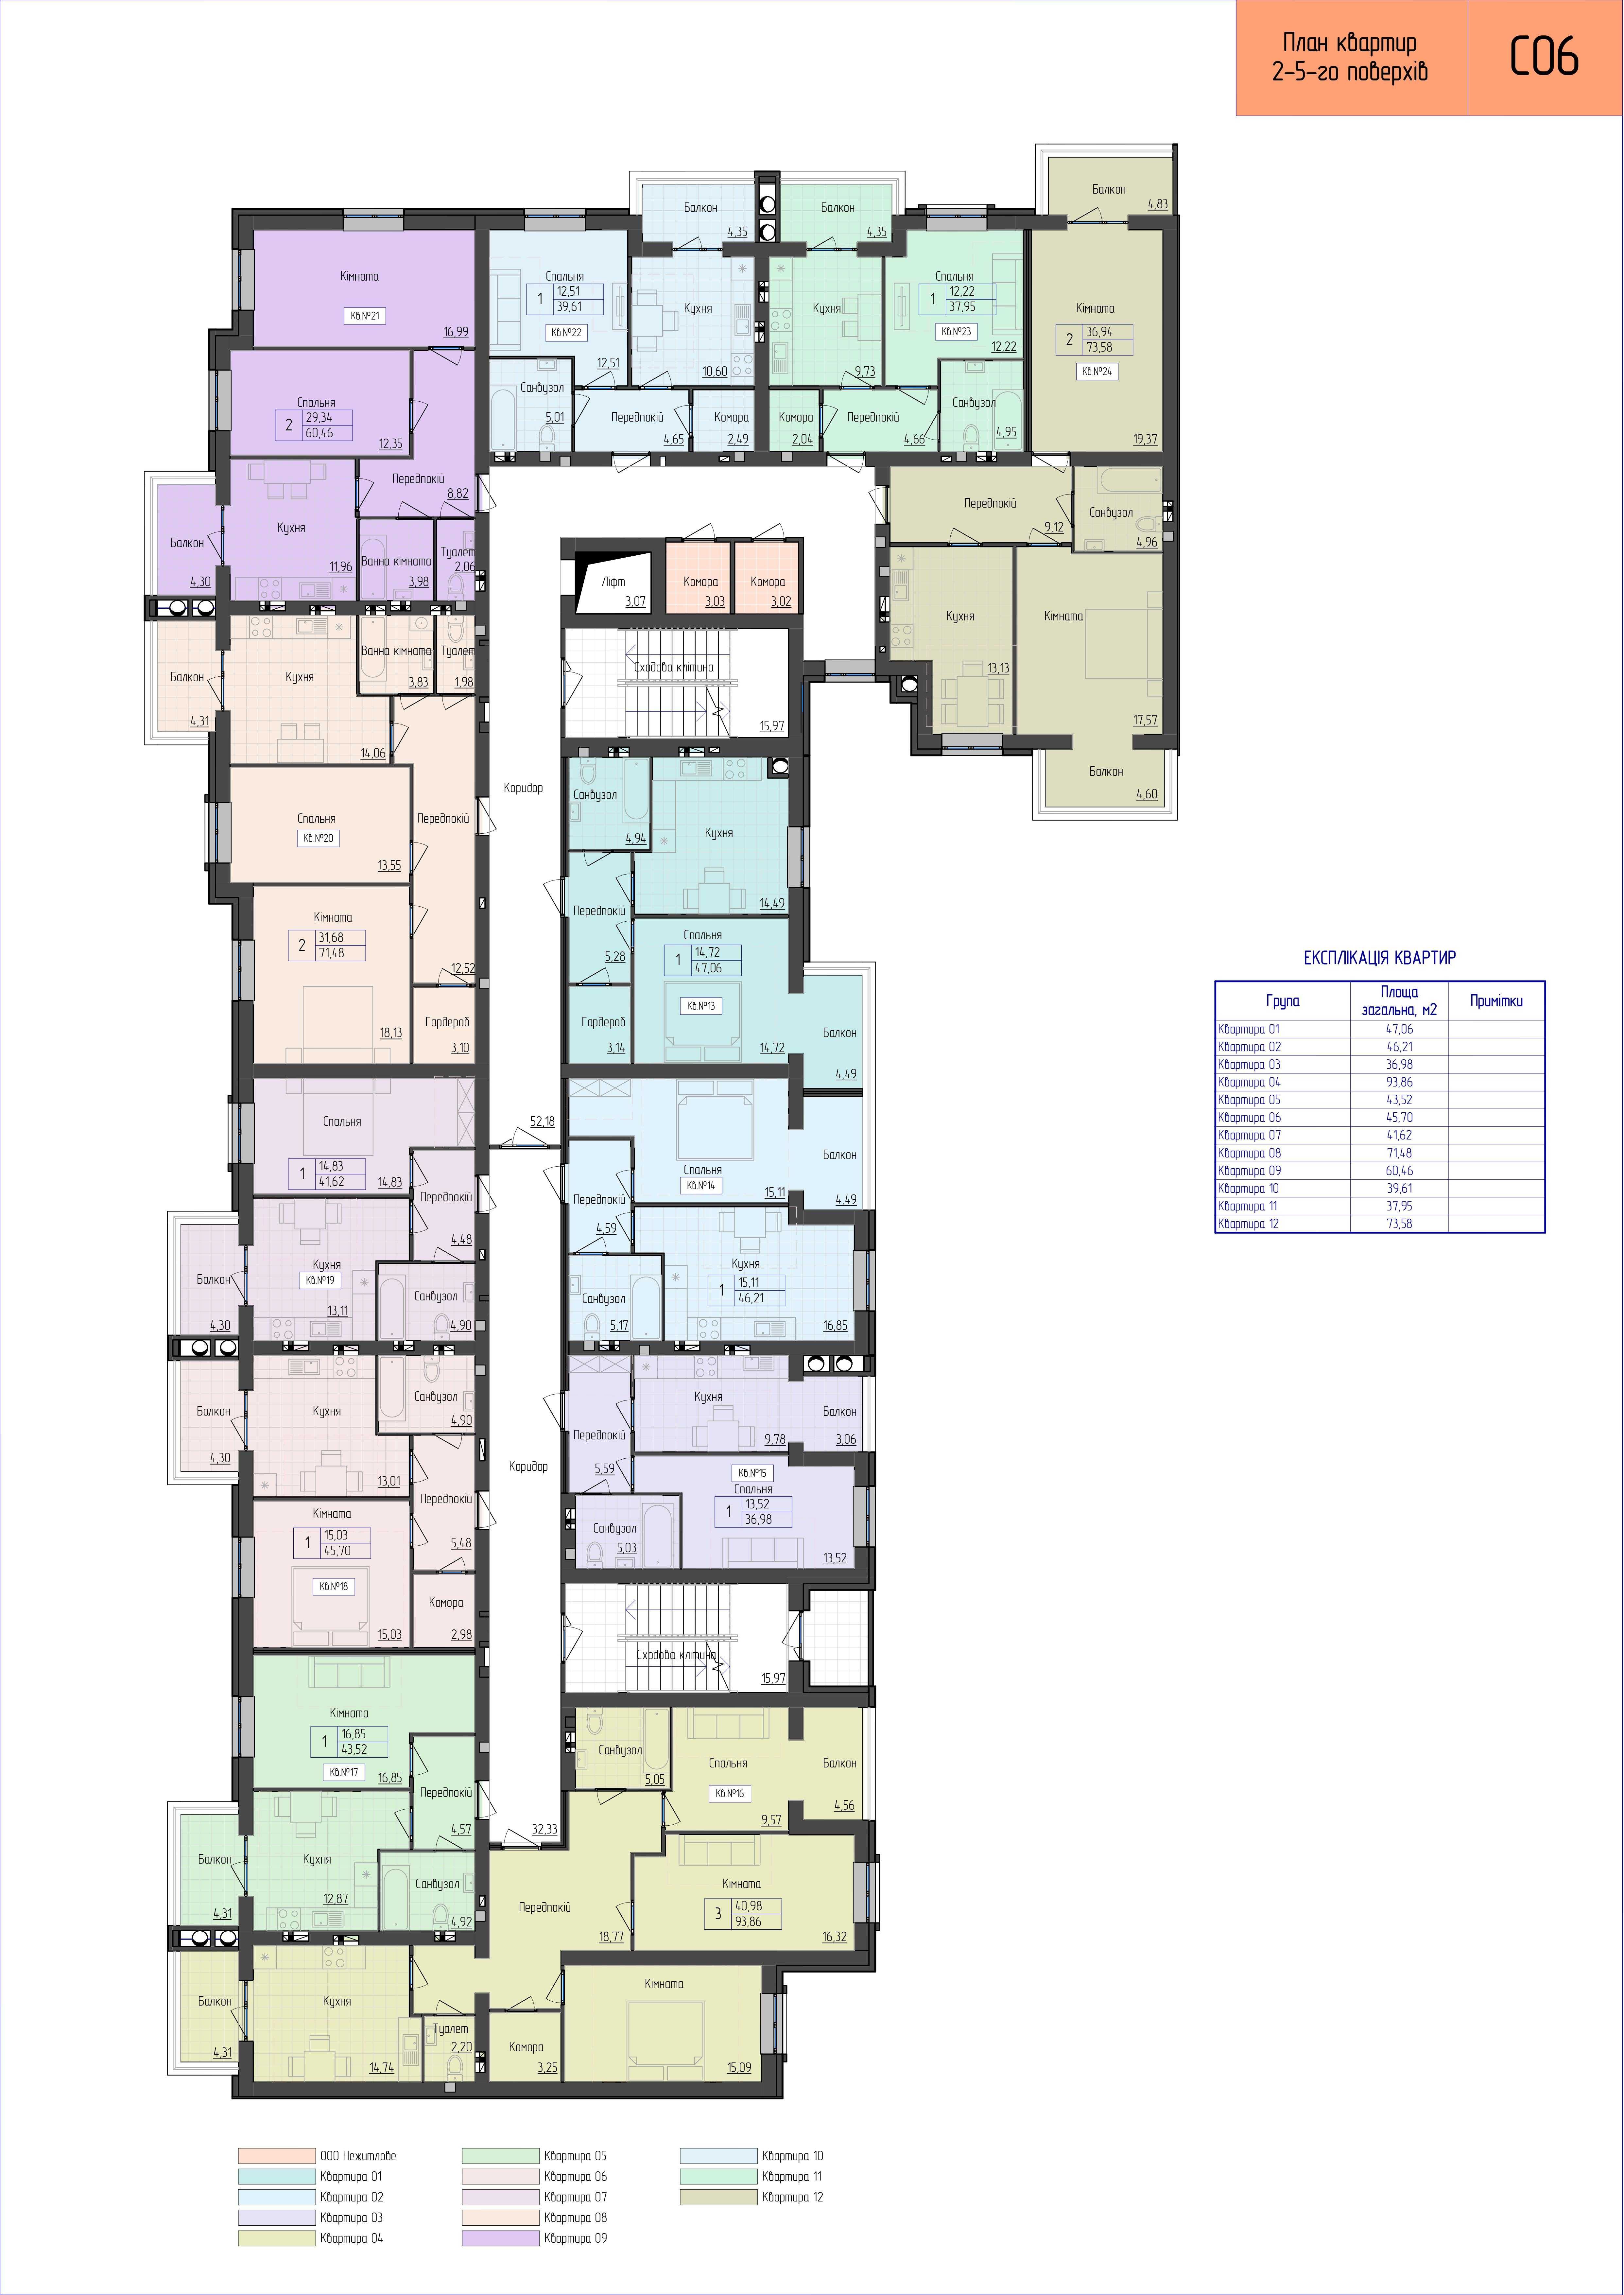 Продаж 3х кімнатної квартири в новобудові (6 будинок)